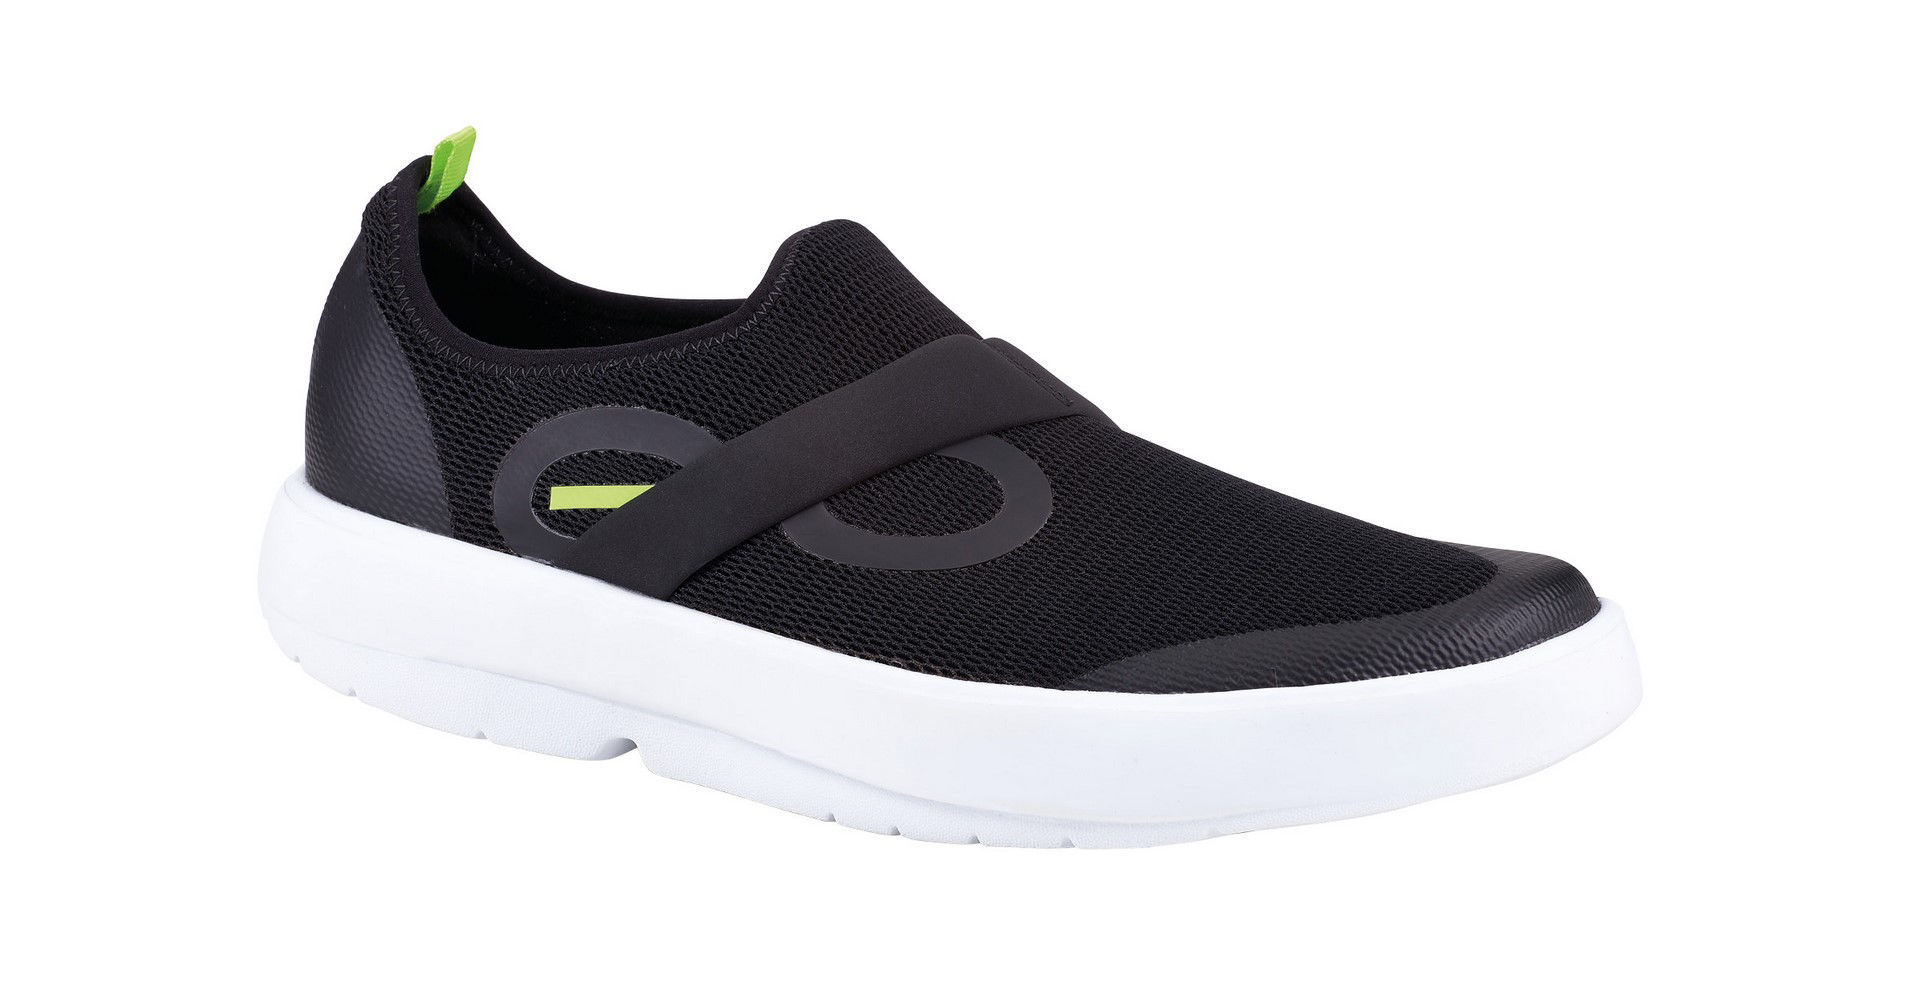 Oofos Oomg Shoe White/Black - Återhämtningsskor med Oofoam®, Herrmodell